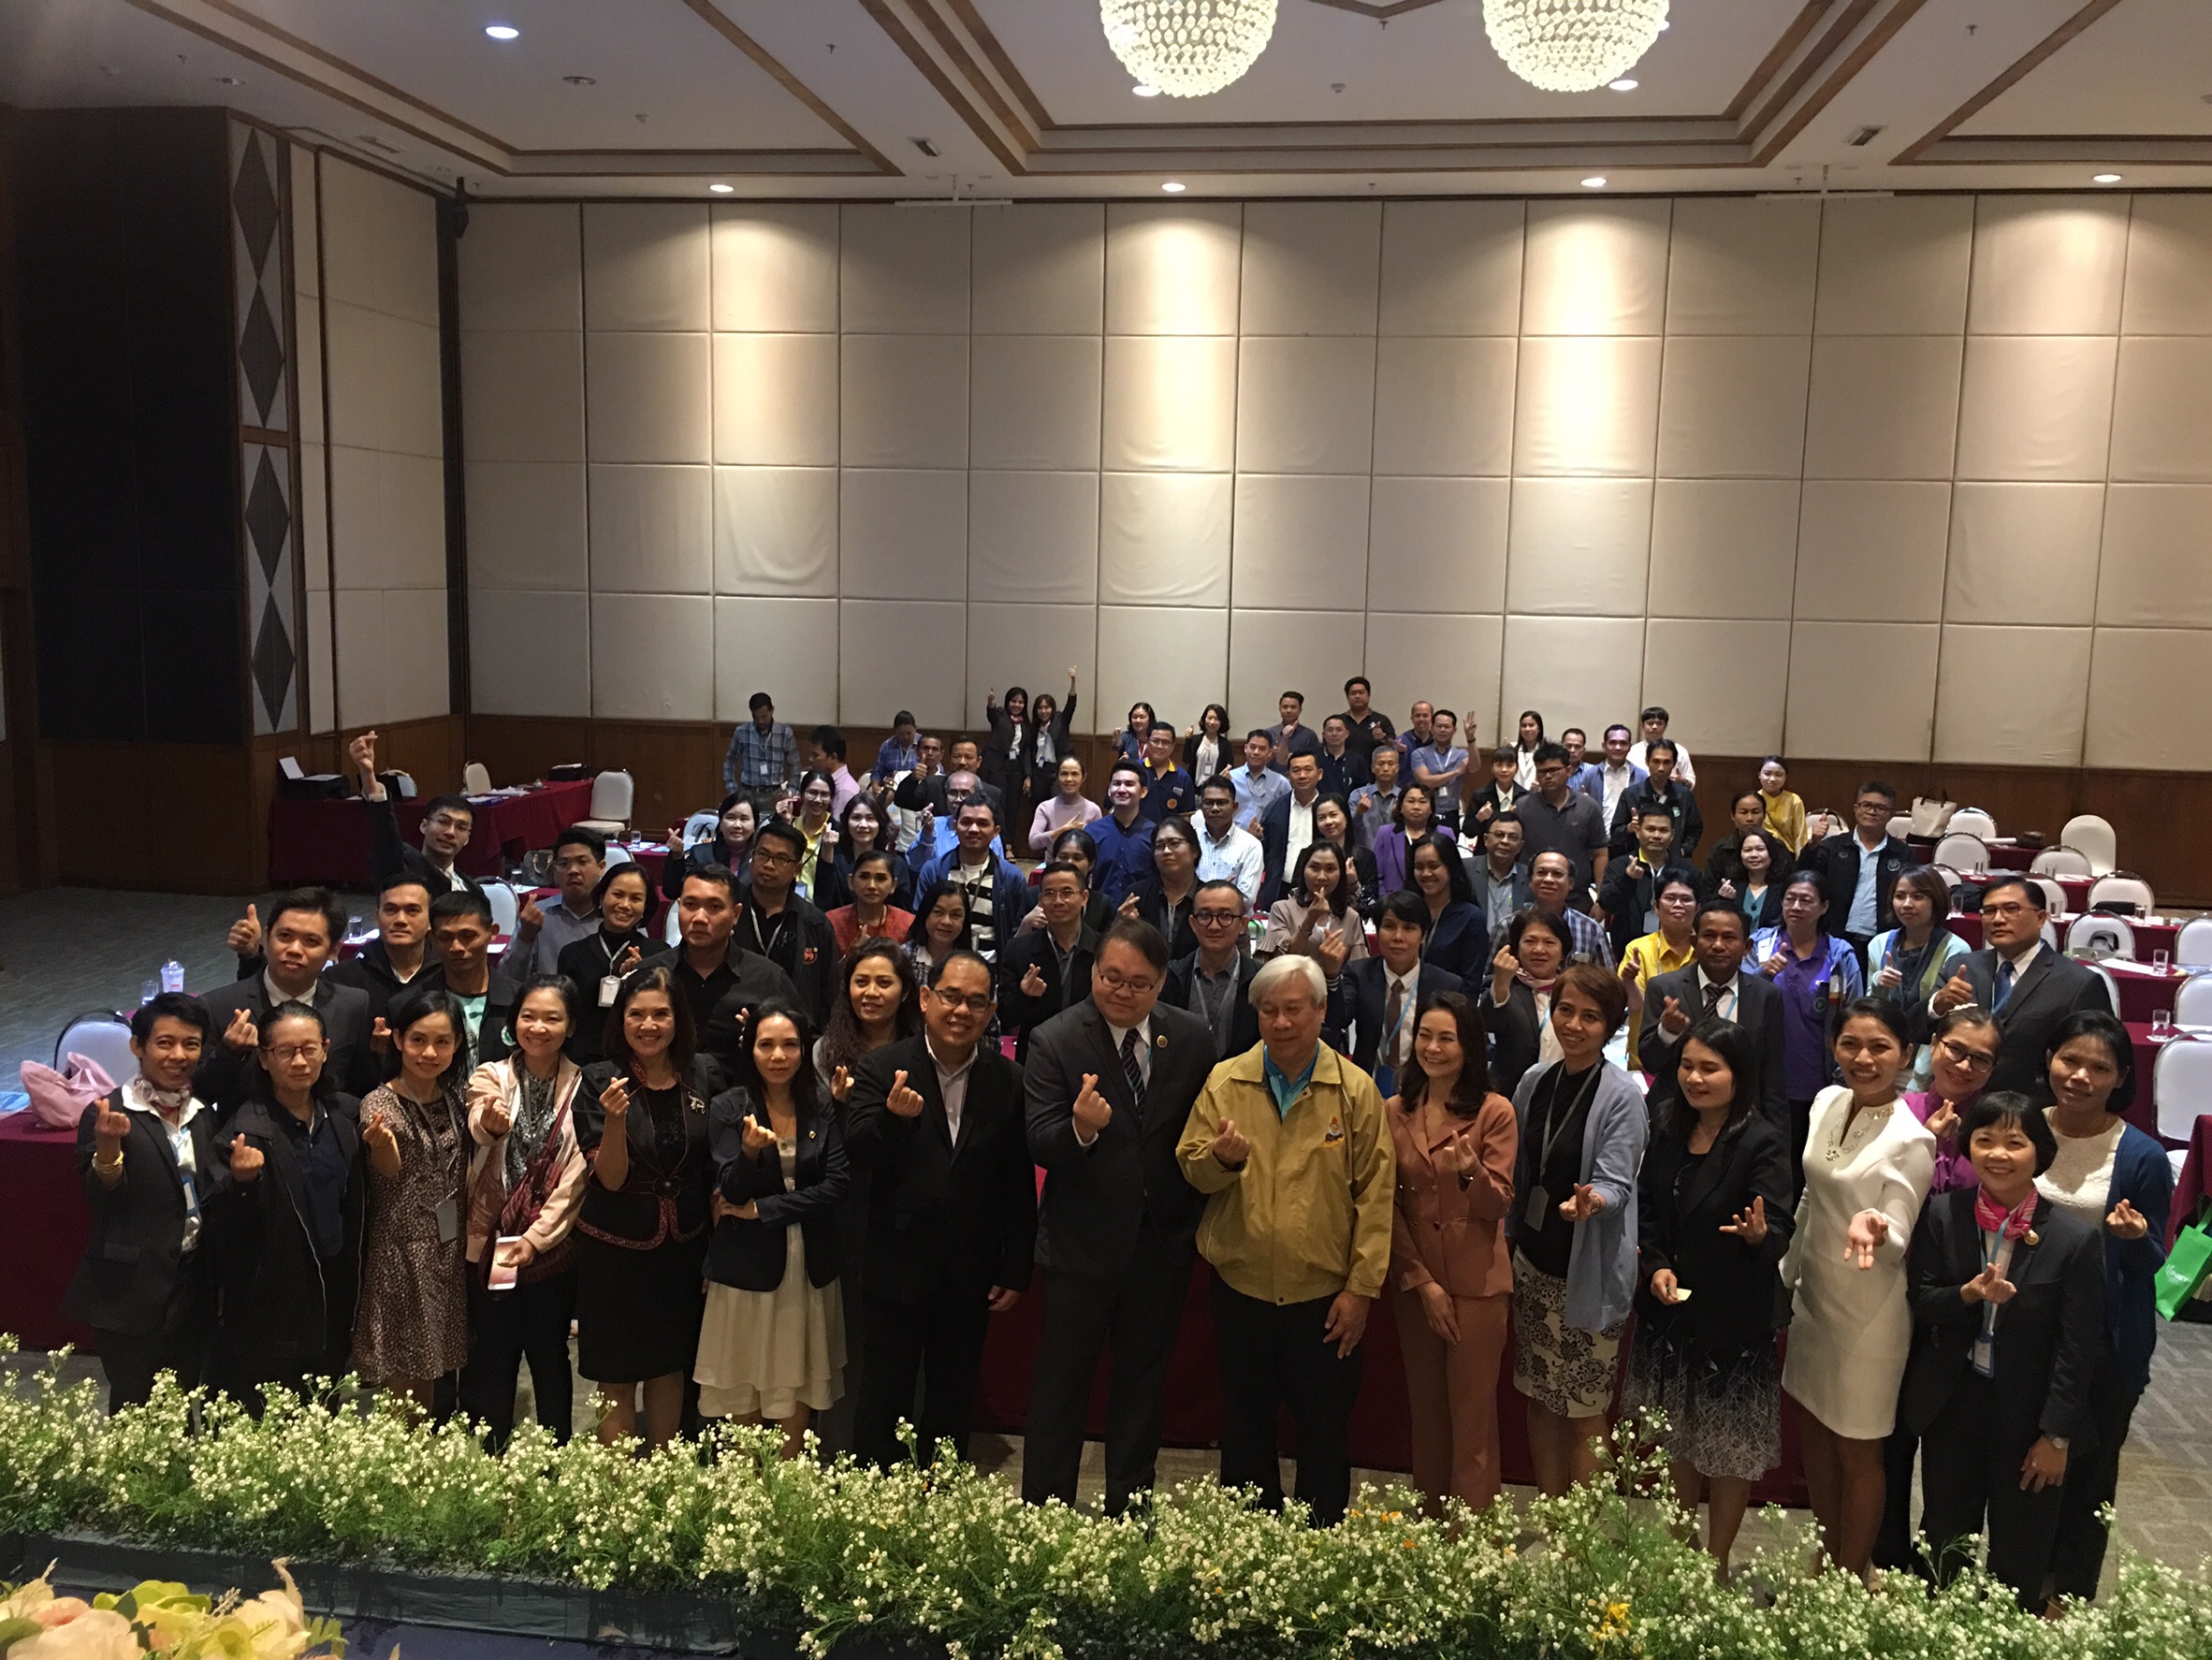 ประชุมวิชาการร่วมกับรังสีการแพทย์แห่งประเทศไทย ครั้งที่17 27-29 พ.ย. - พร้อมเข้าเยี่ยมและให้กำลังใจหน่วยงานรังสีวิทยาในพื้นที่จังหวัดอุบลราชธานีระหว่างวันที่ 25-26 พฤศจิกายน 2562 18